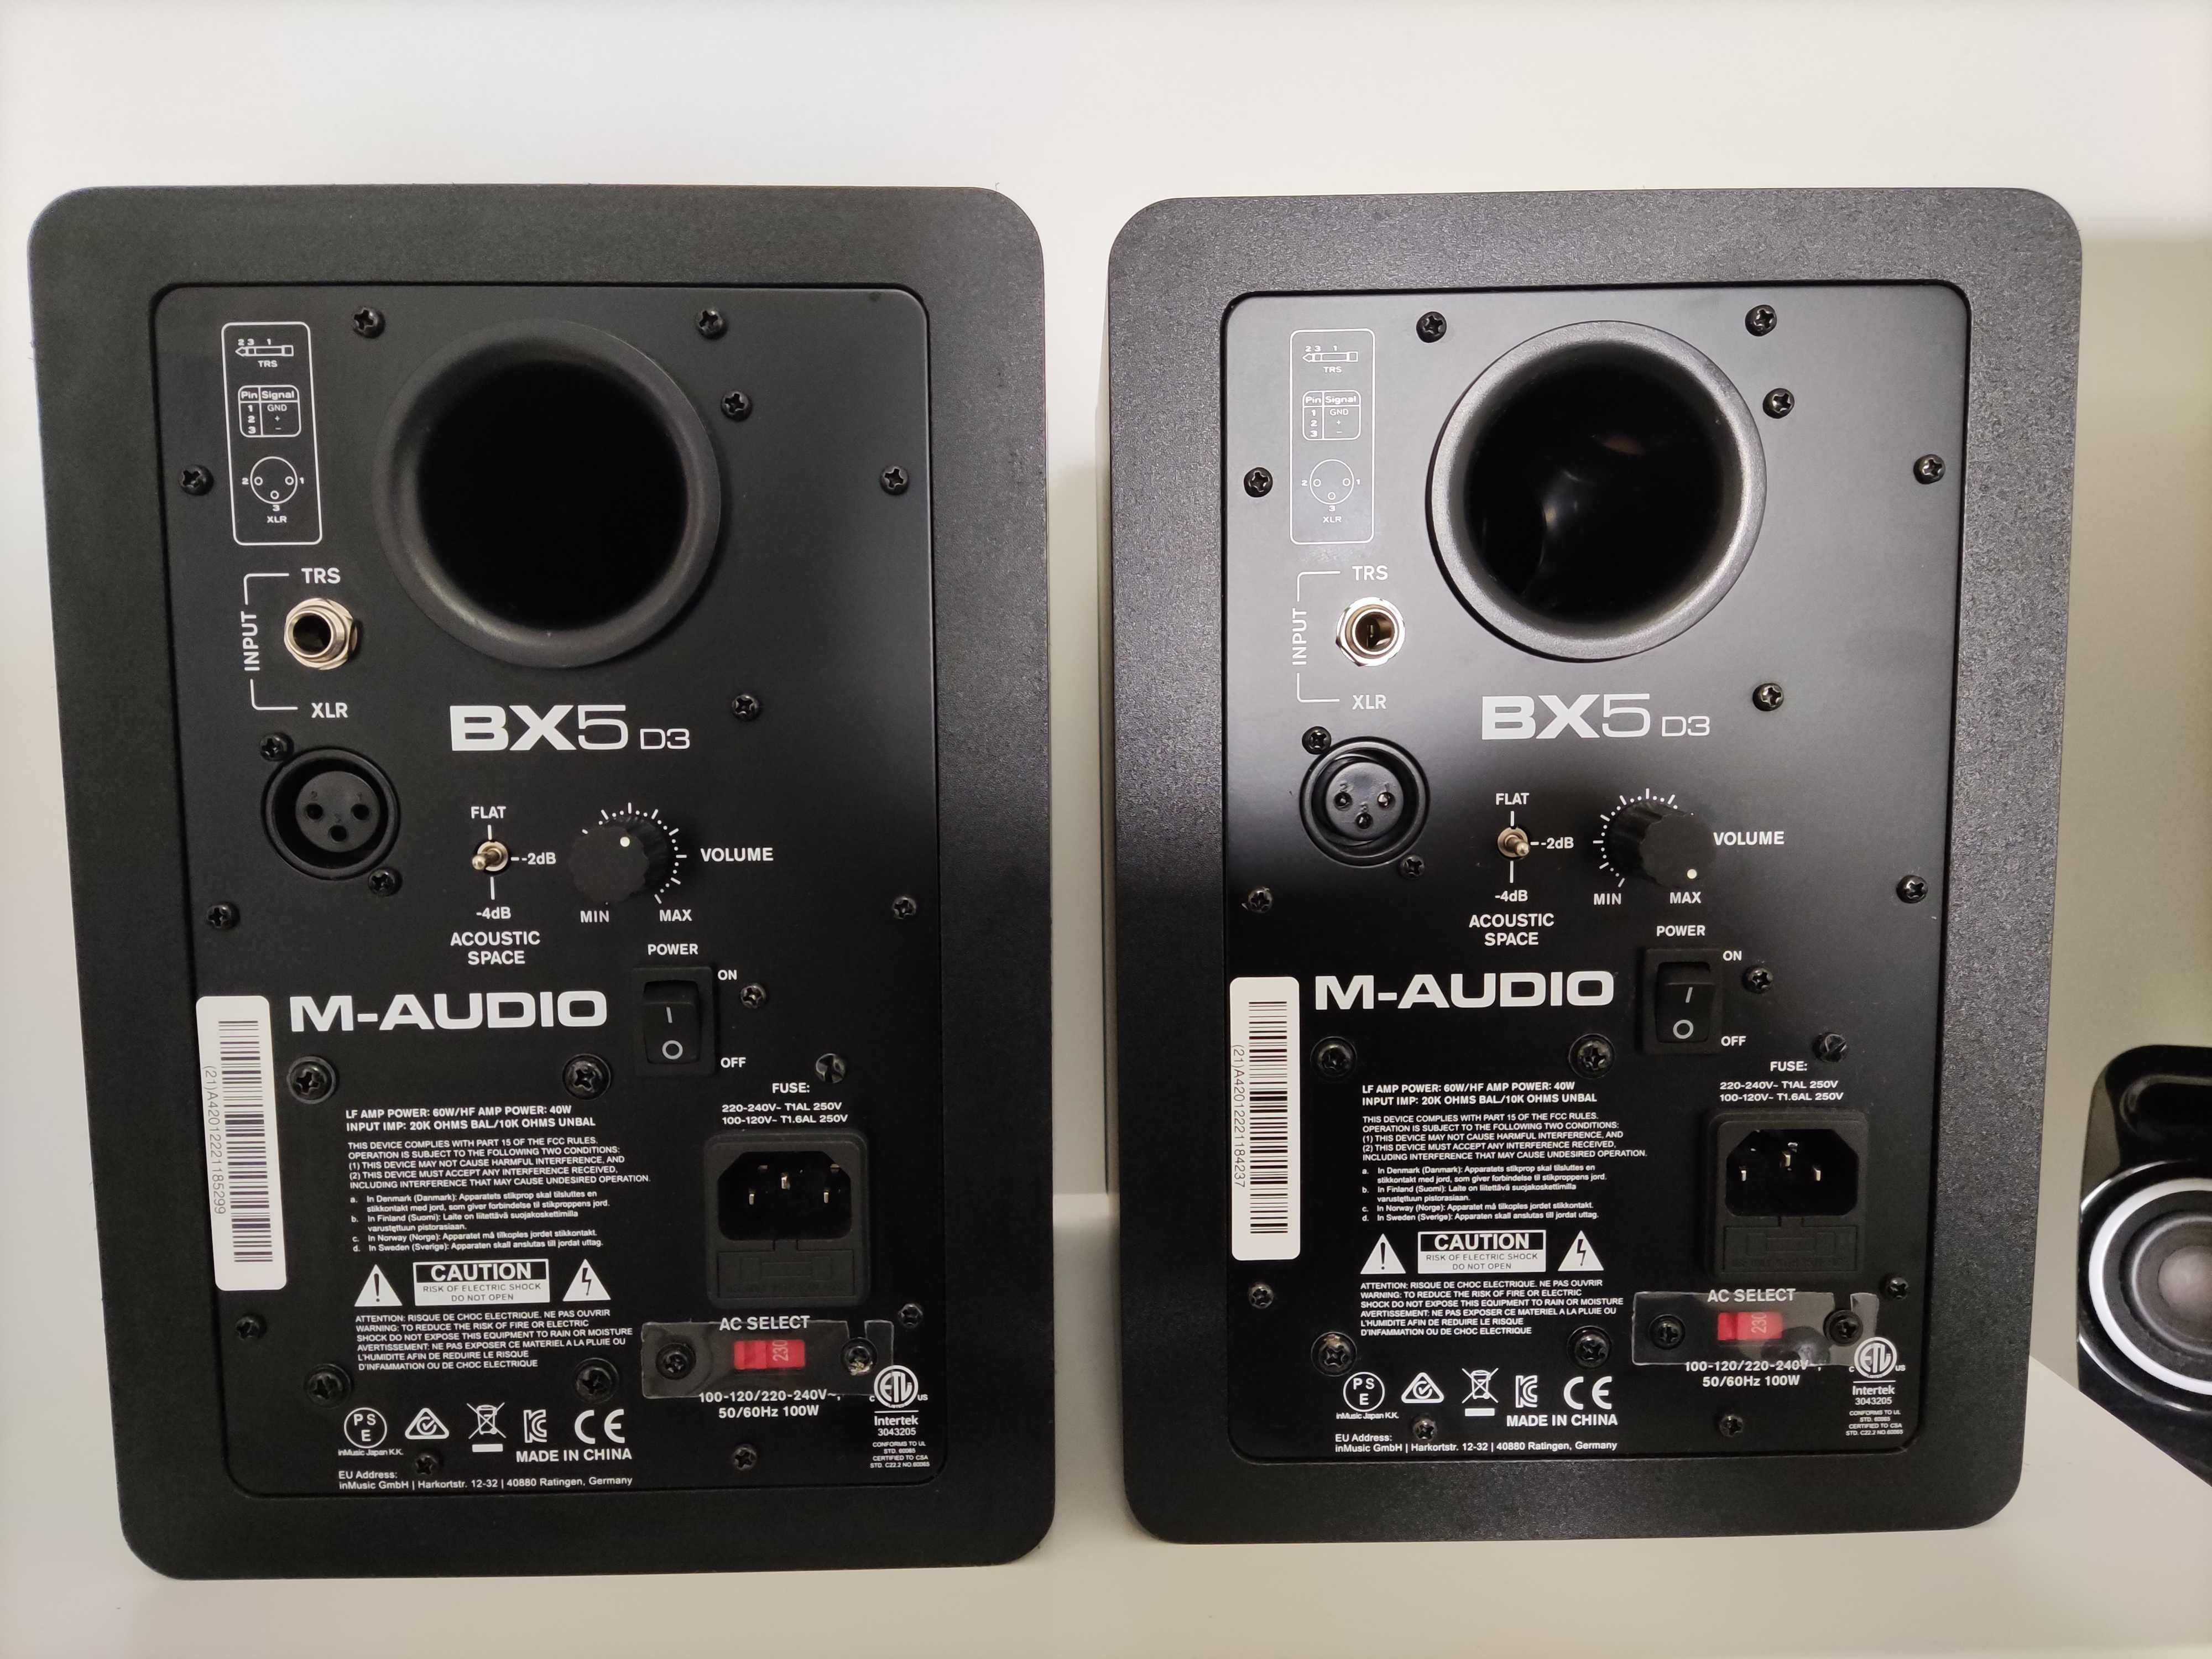 Monitores de Estúdio M-Audio BX5 D3